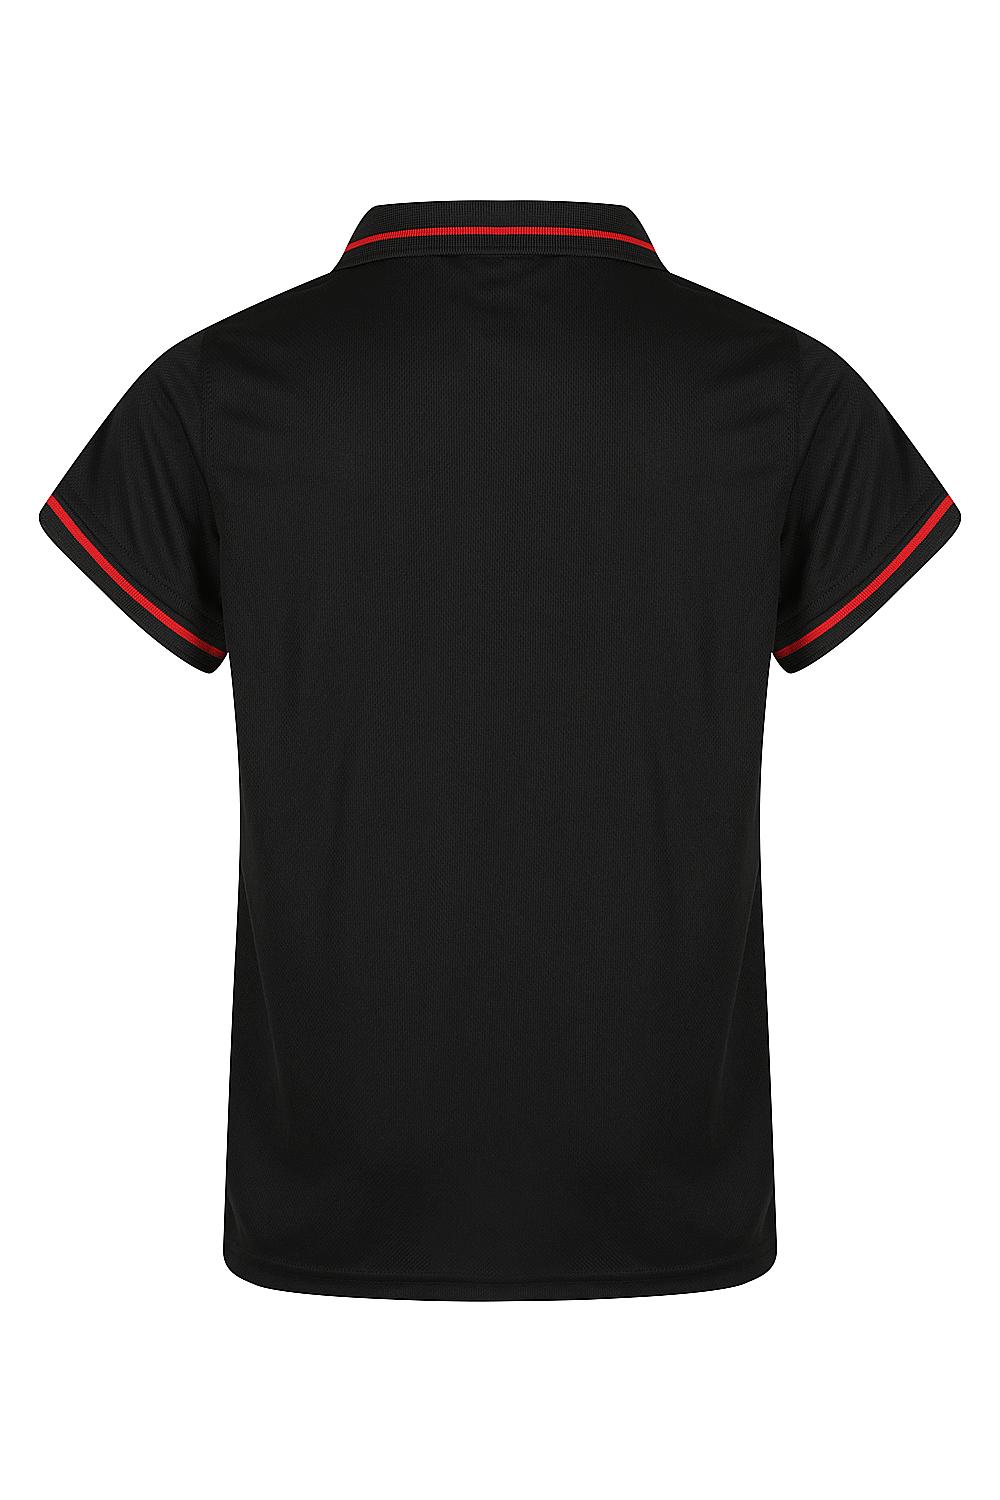 Cottesloe Polos | Custom Kids Shirts 🔥 Safe-T-Rex Workwear Black/Red Back